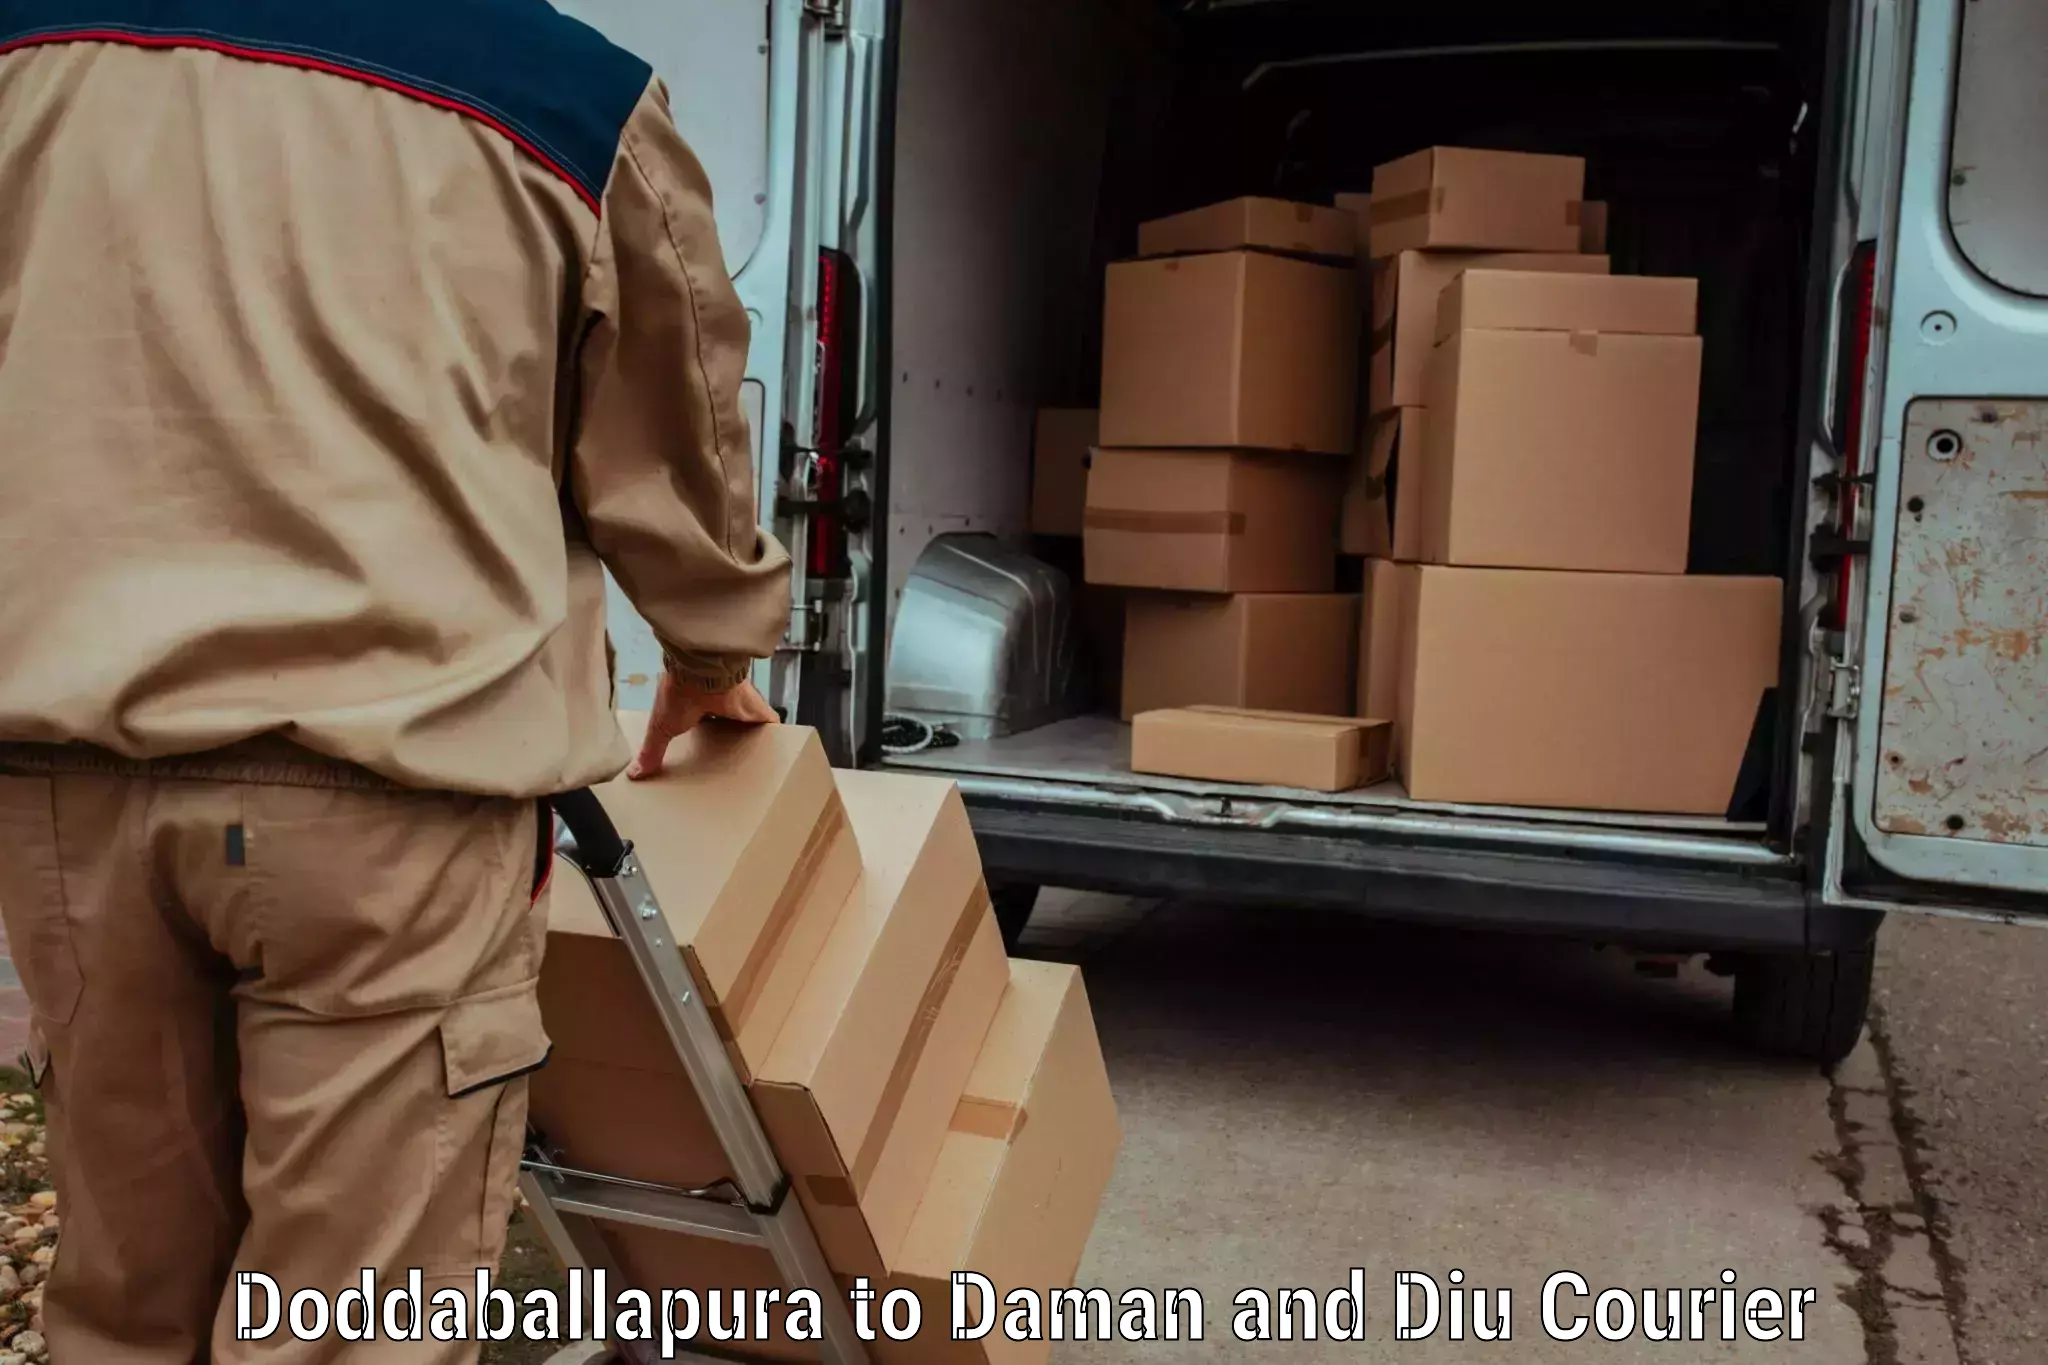 Multi-carrier shipping Doddaballapura to Daman